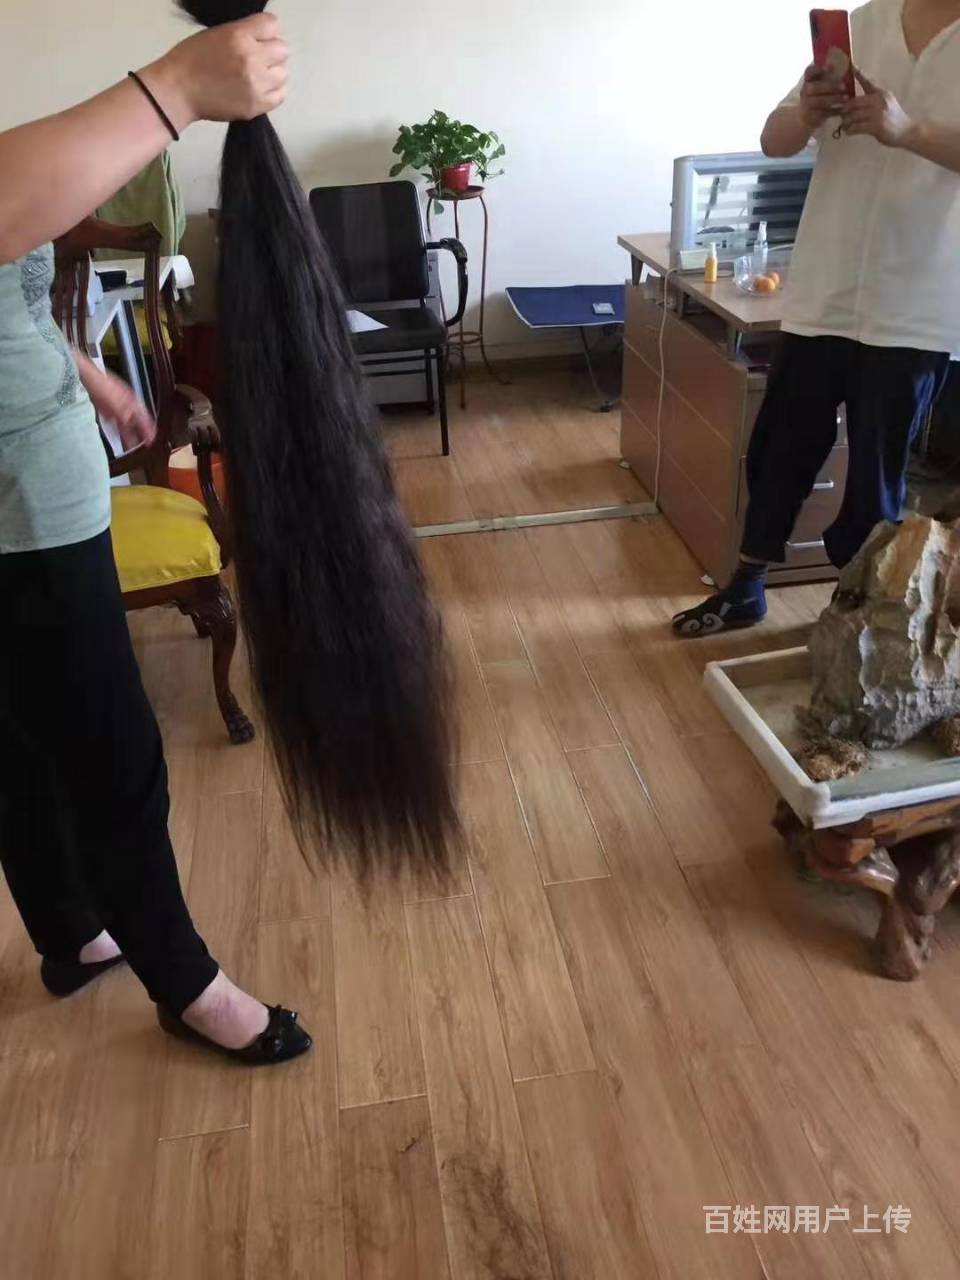 郑州专业长头发回收价格,价格公道,长短都剪